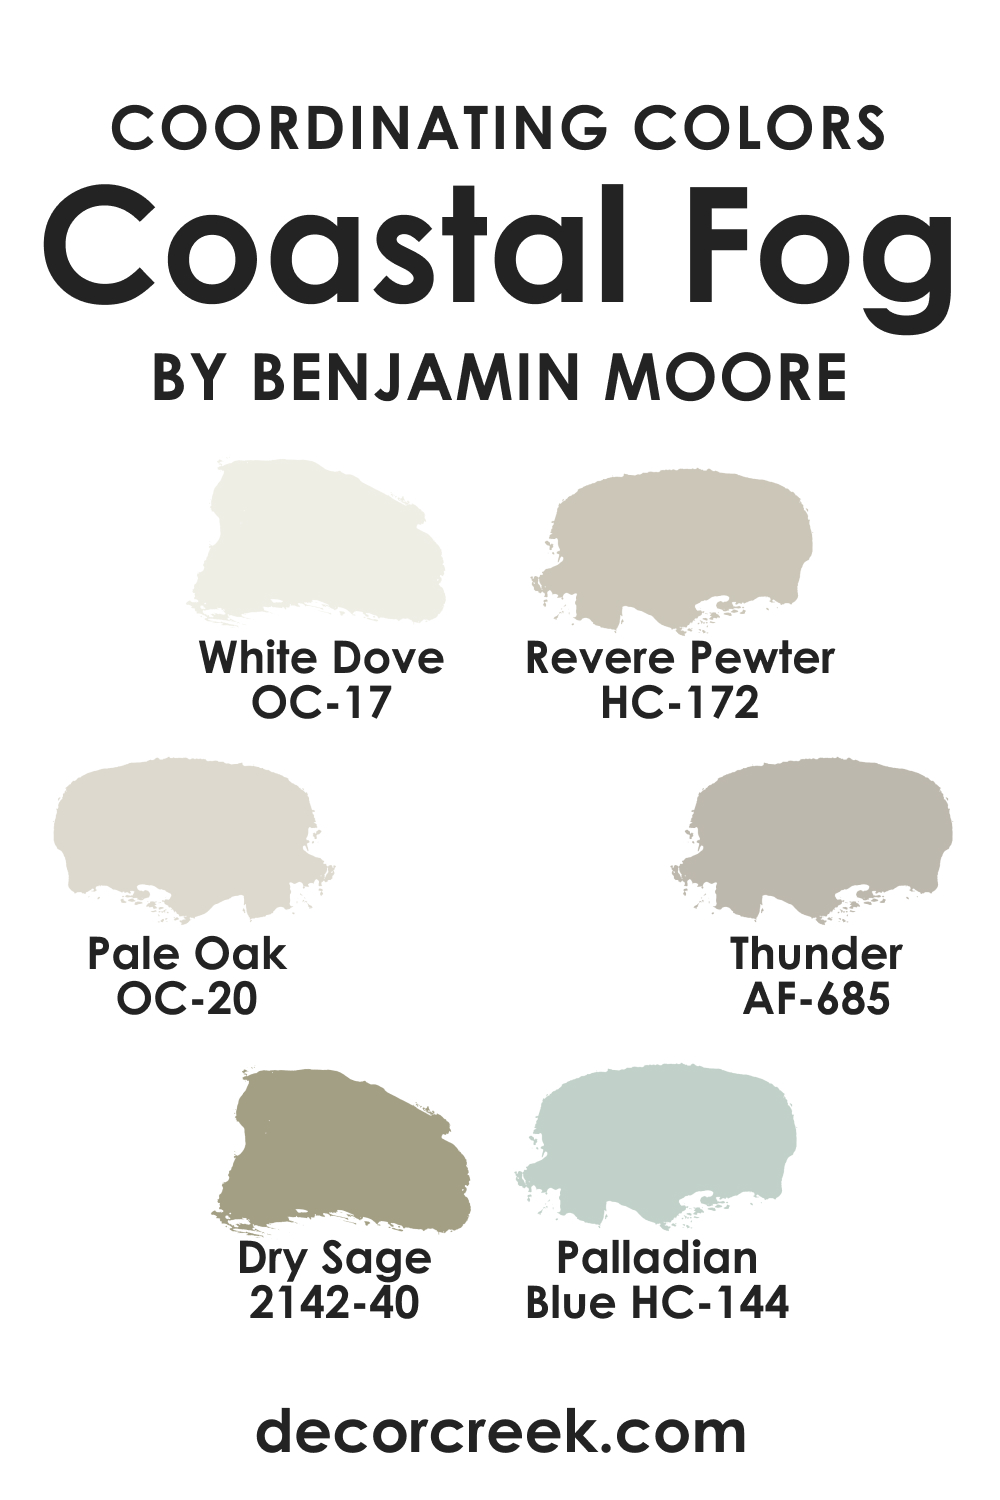 Coordinating Colors of Coastal Fog AC-1